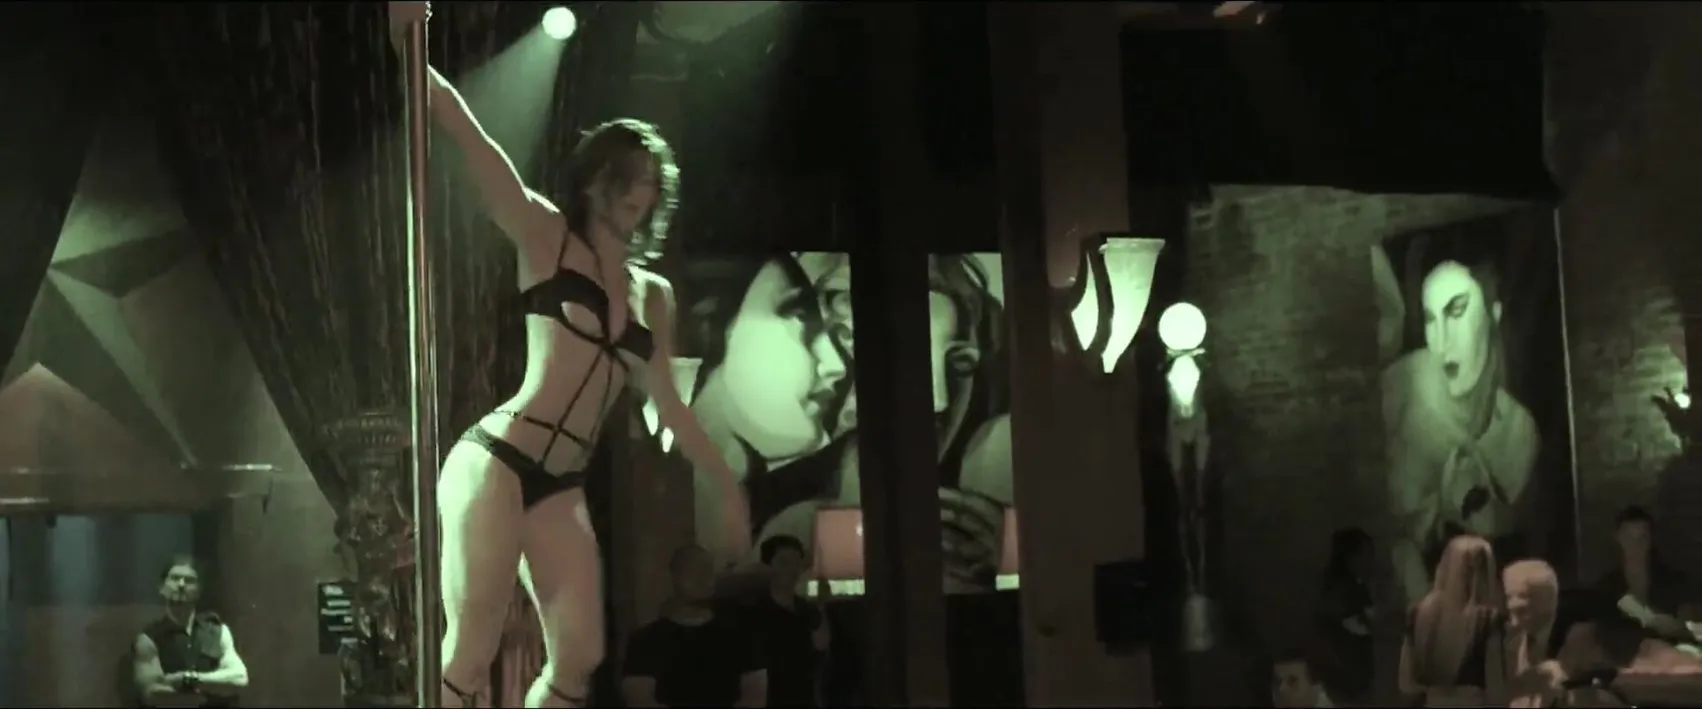 Jessica Biel topless as a stripper in Powder Blue